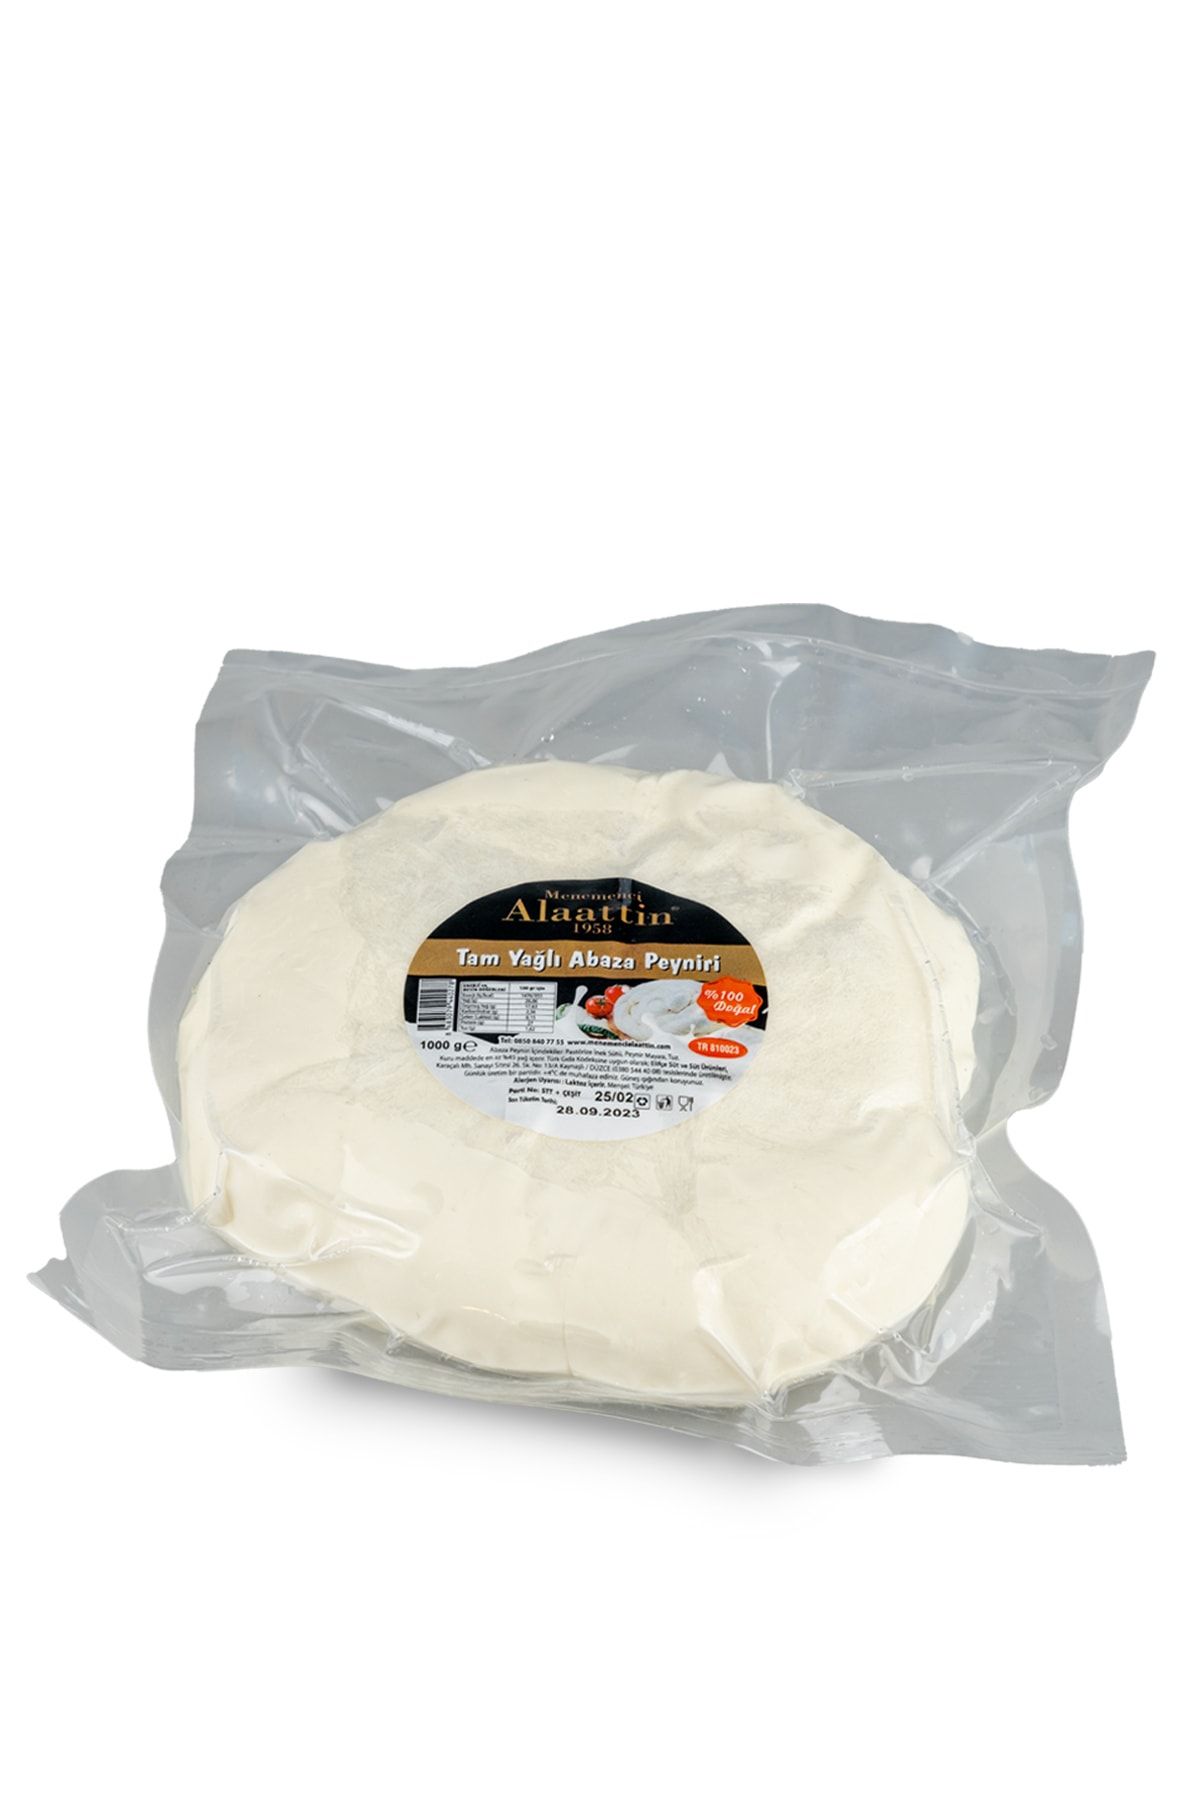 Menemenci Alaattin Tam Yağlı Abaza Peyniri 1000 gram